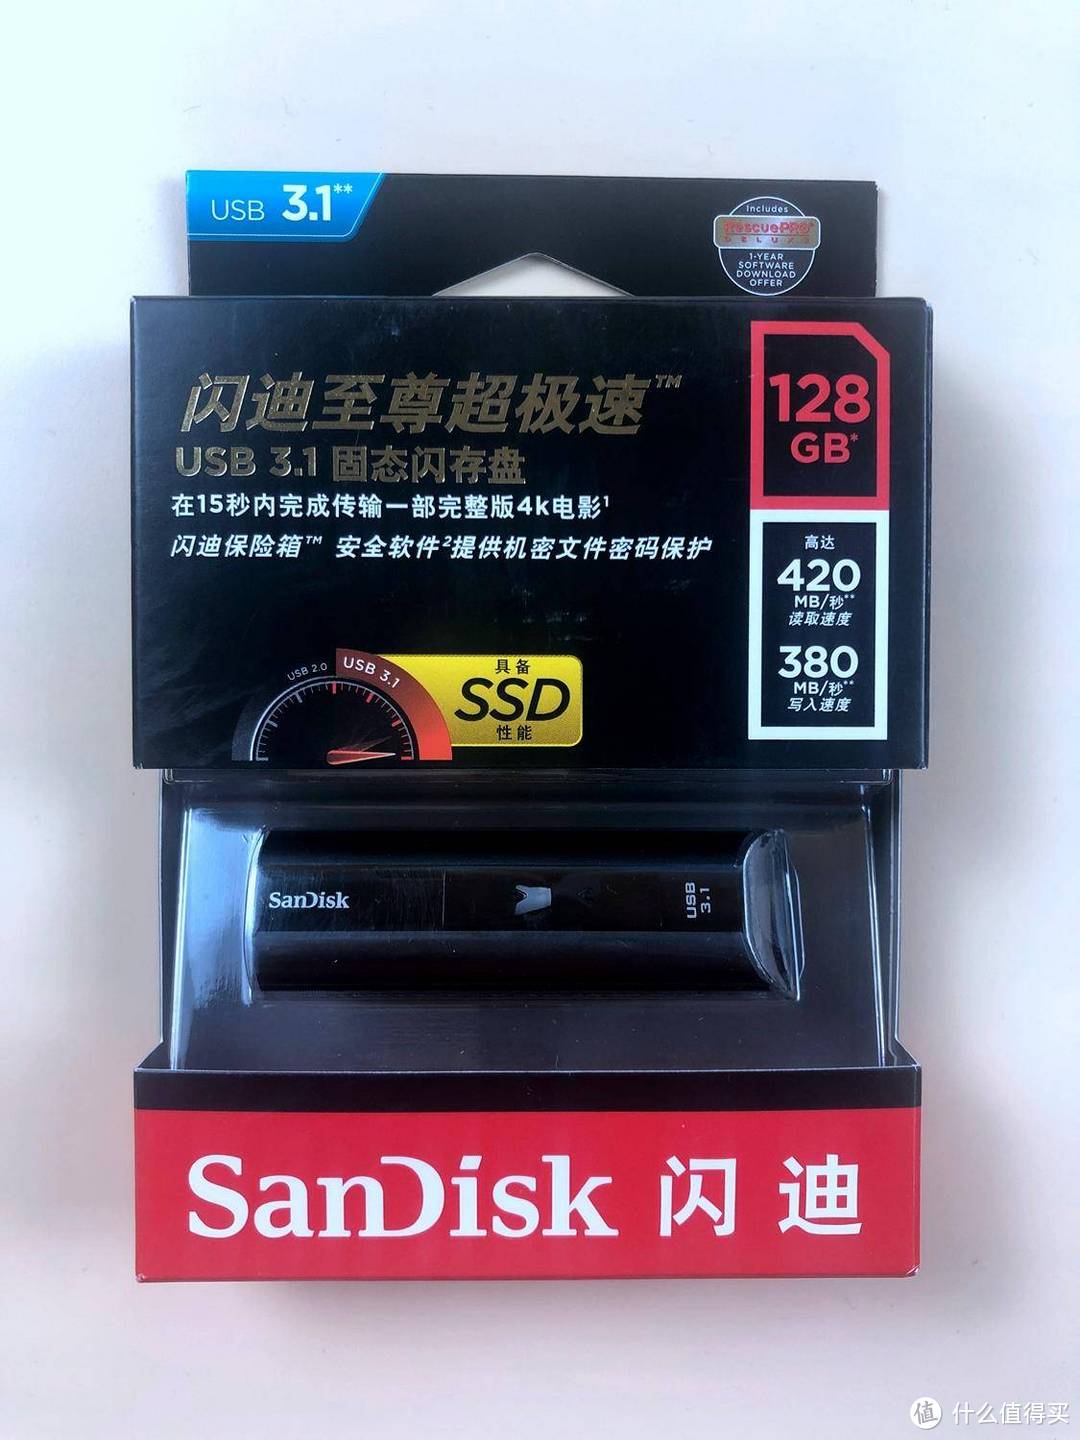 贵在哪？贵在值-闪迪(SanDisk)  CZ880至尊超极速 USB3.1 U盘 开箱实测